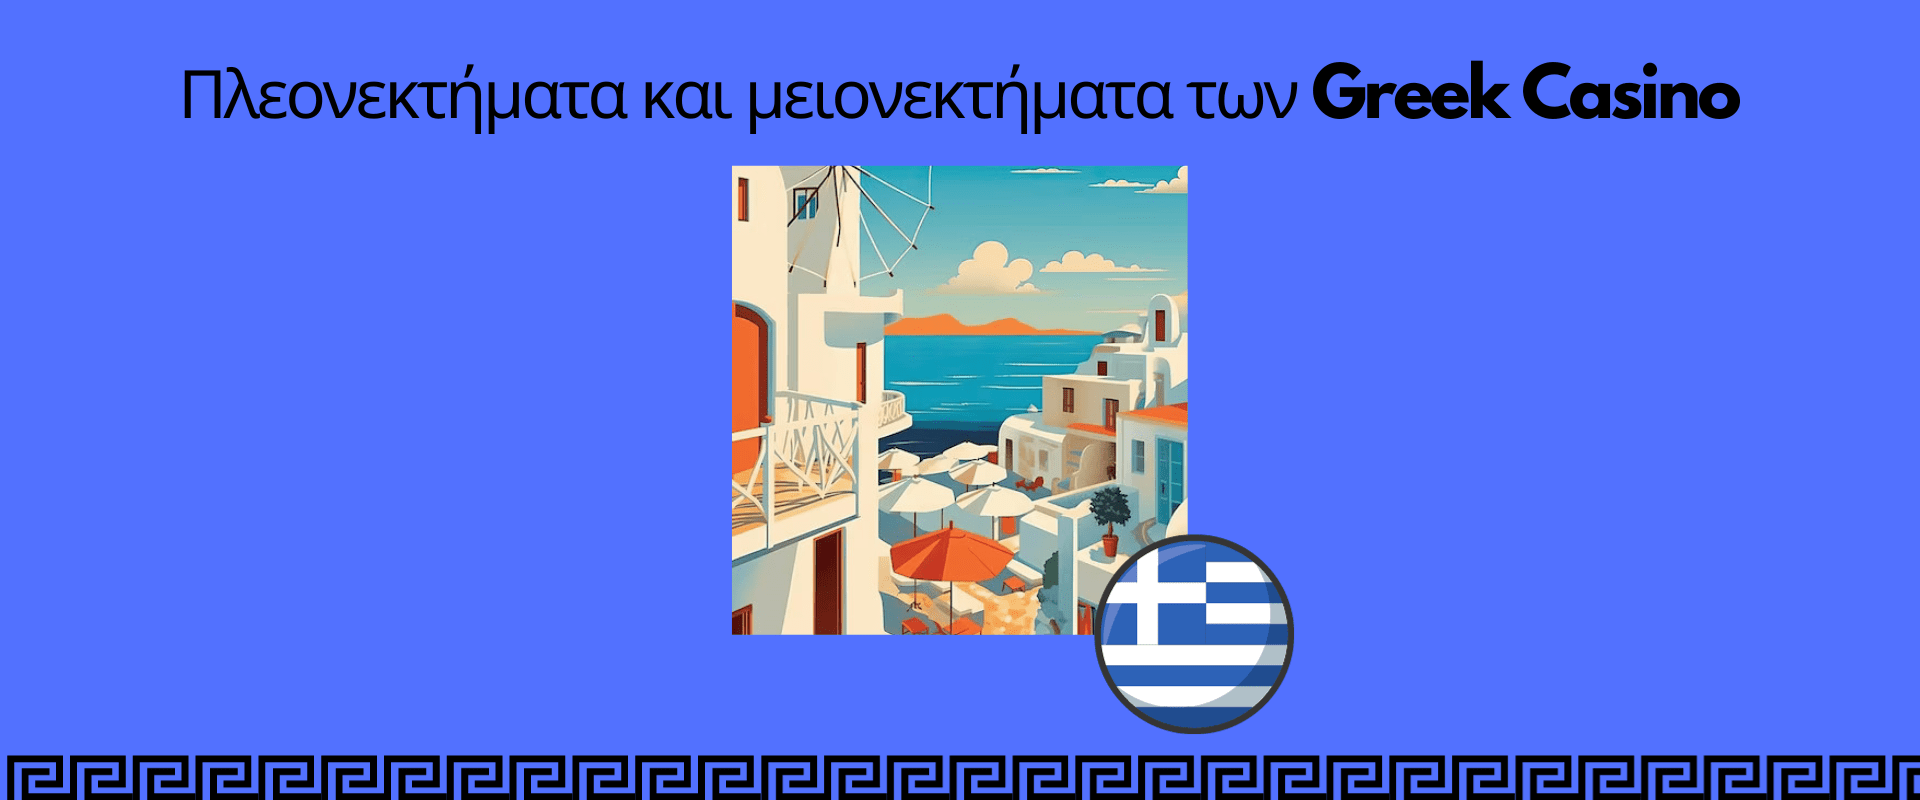 Πλεονεκτήματα και μειονεκτήματα των Greek Casino